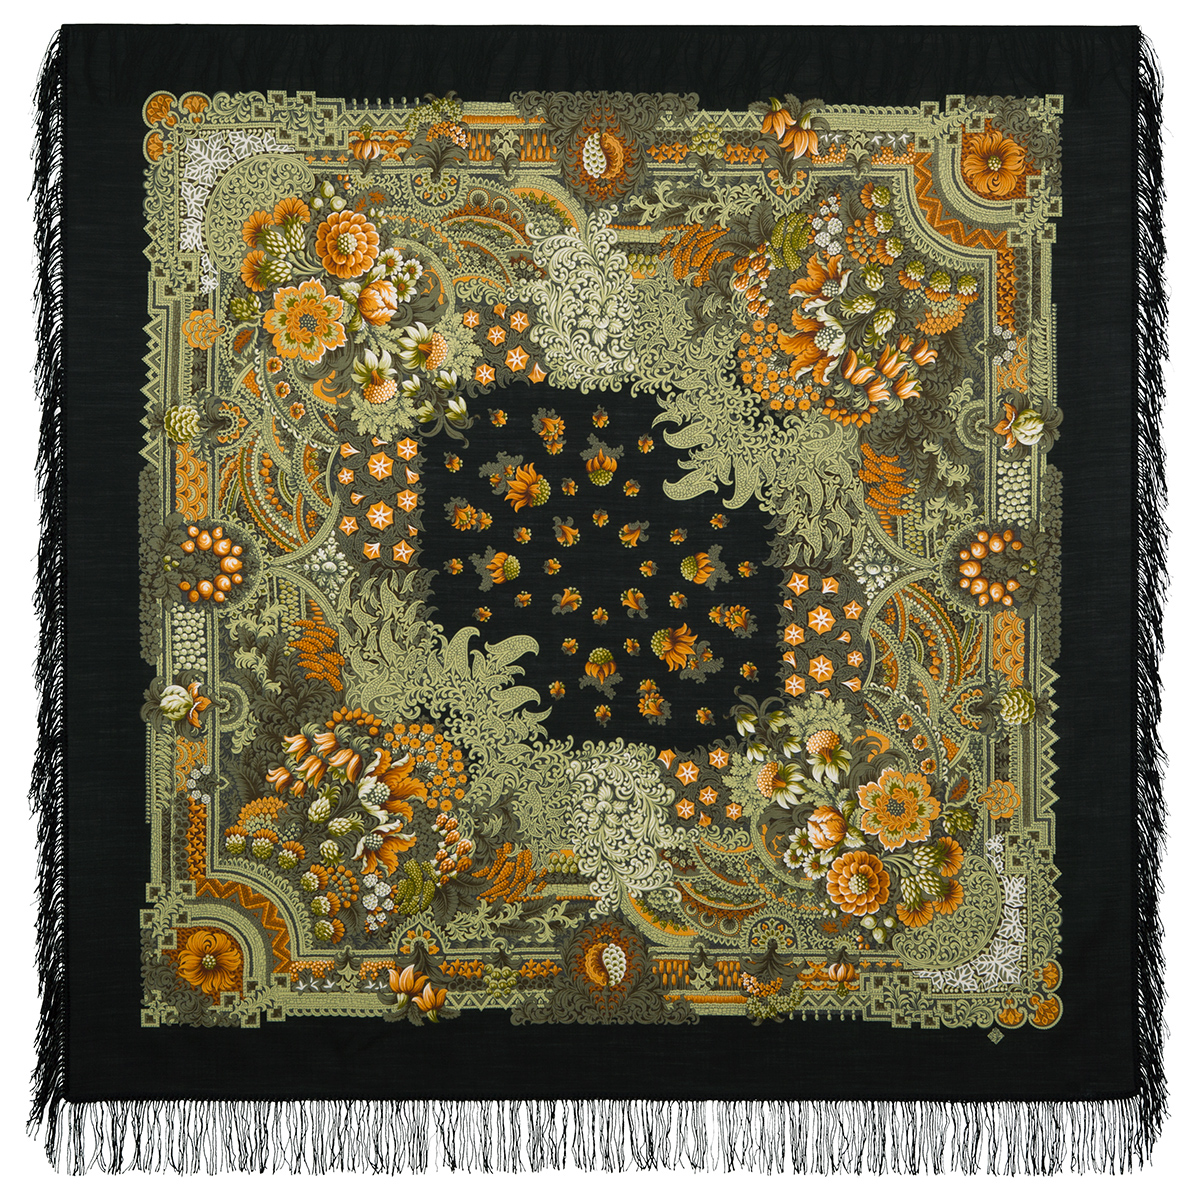 Платок женский Павловопосадский платок 1С146-3-ПН черный/зеленый/оранжевый, 146х146 см